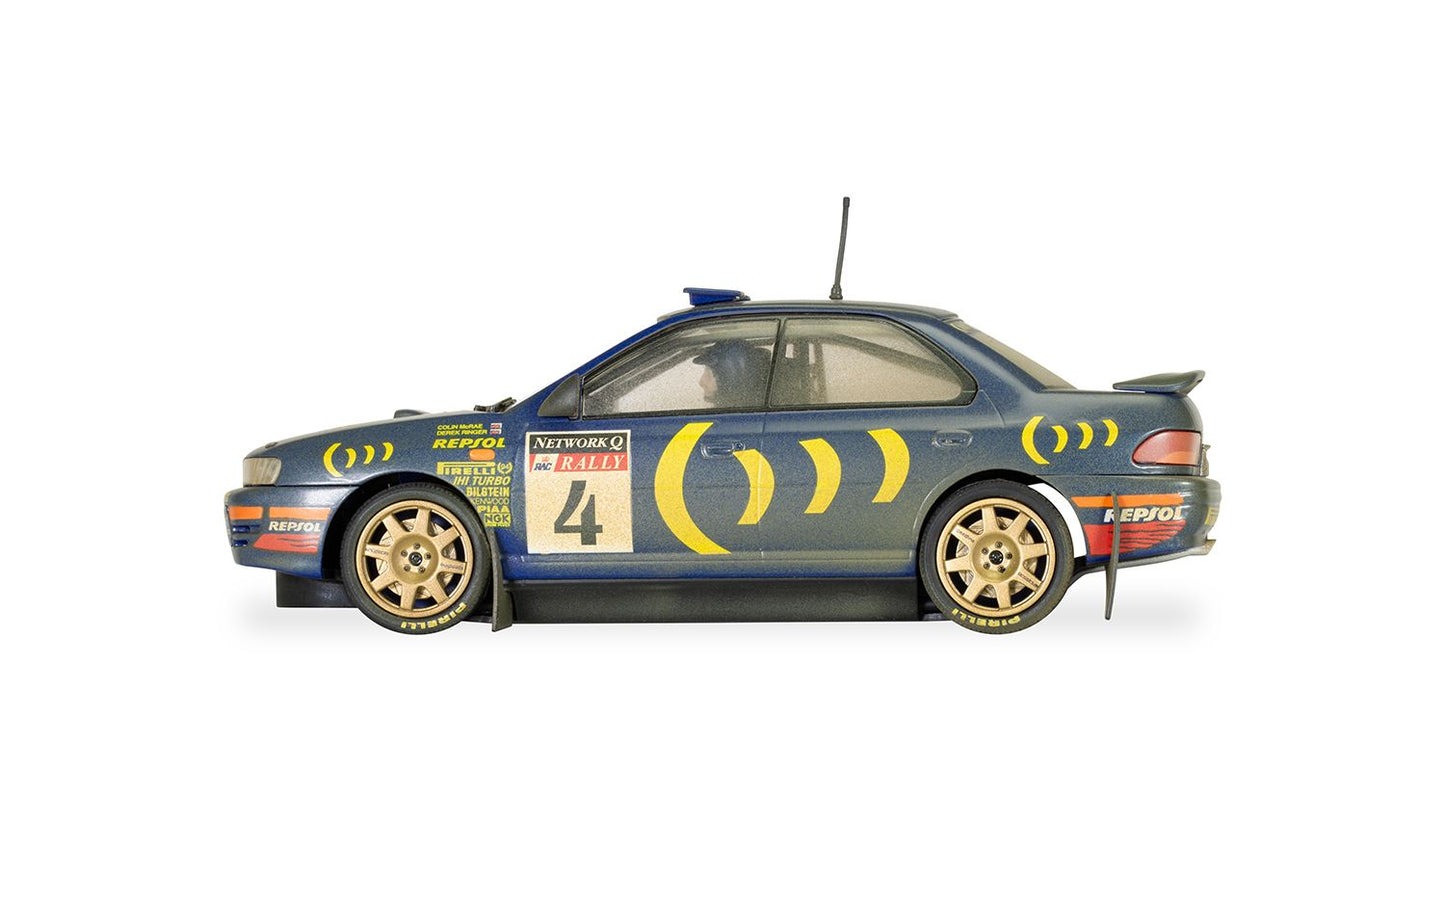 Subaru Impreza WRX Colin McRae 1995 World Champion Edition